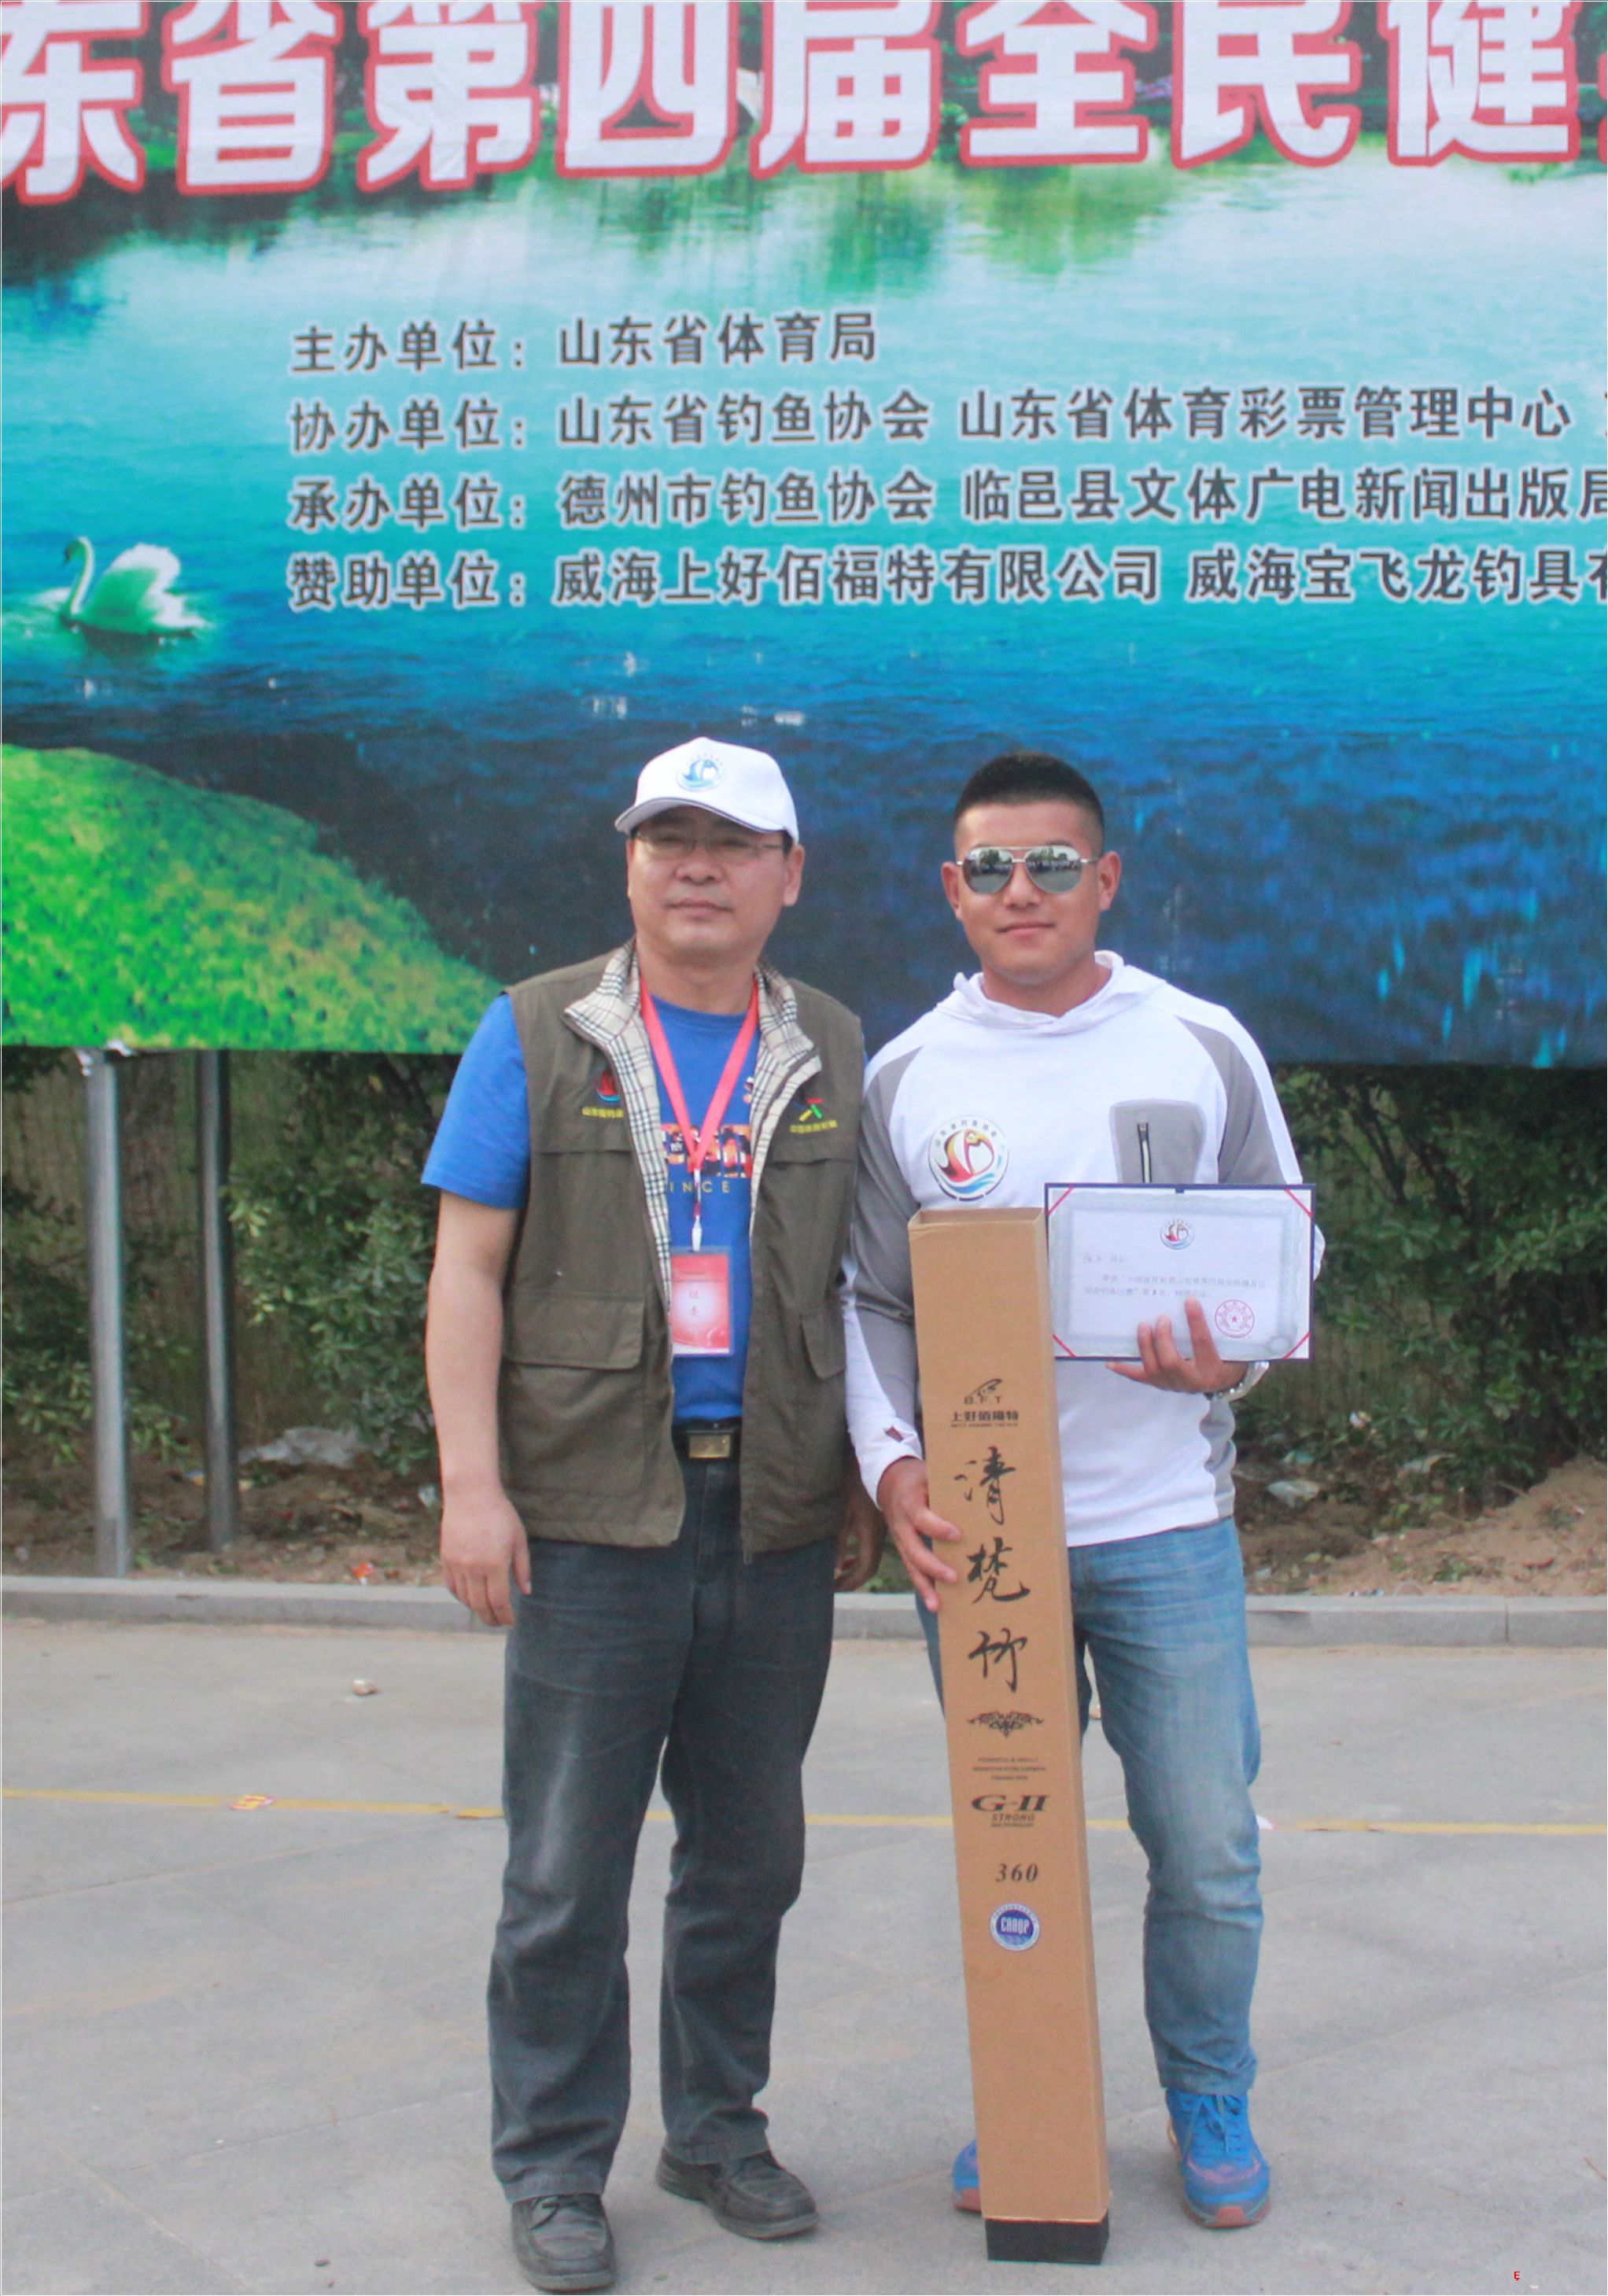 中国体育彩票山东省第四届全民健身运动会钓鱼比赛第三名